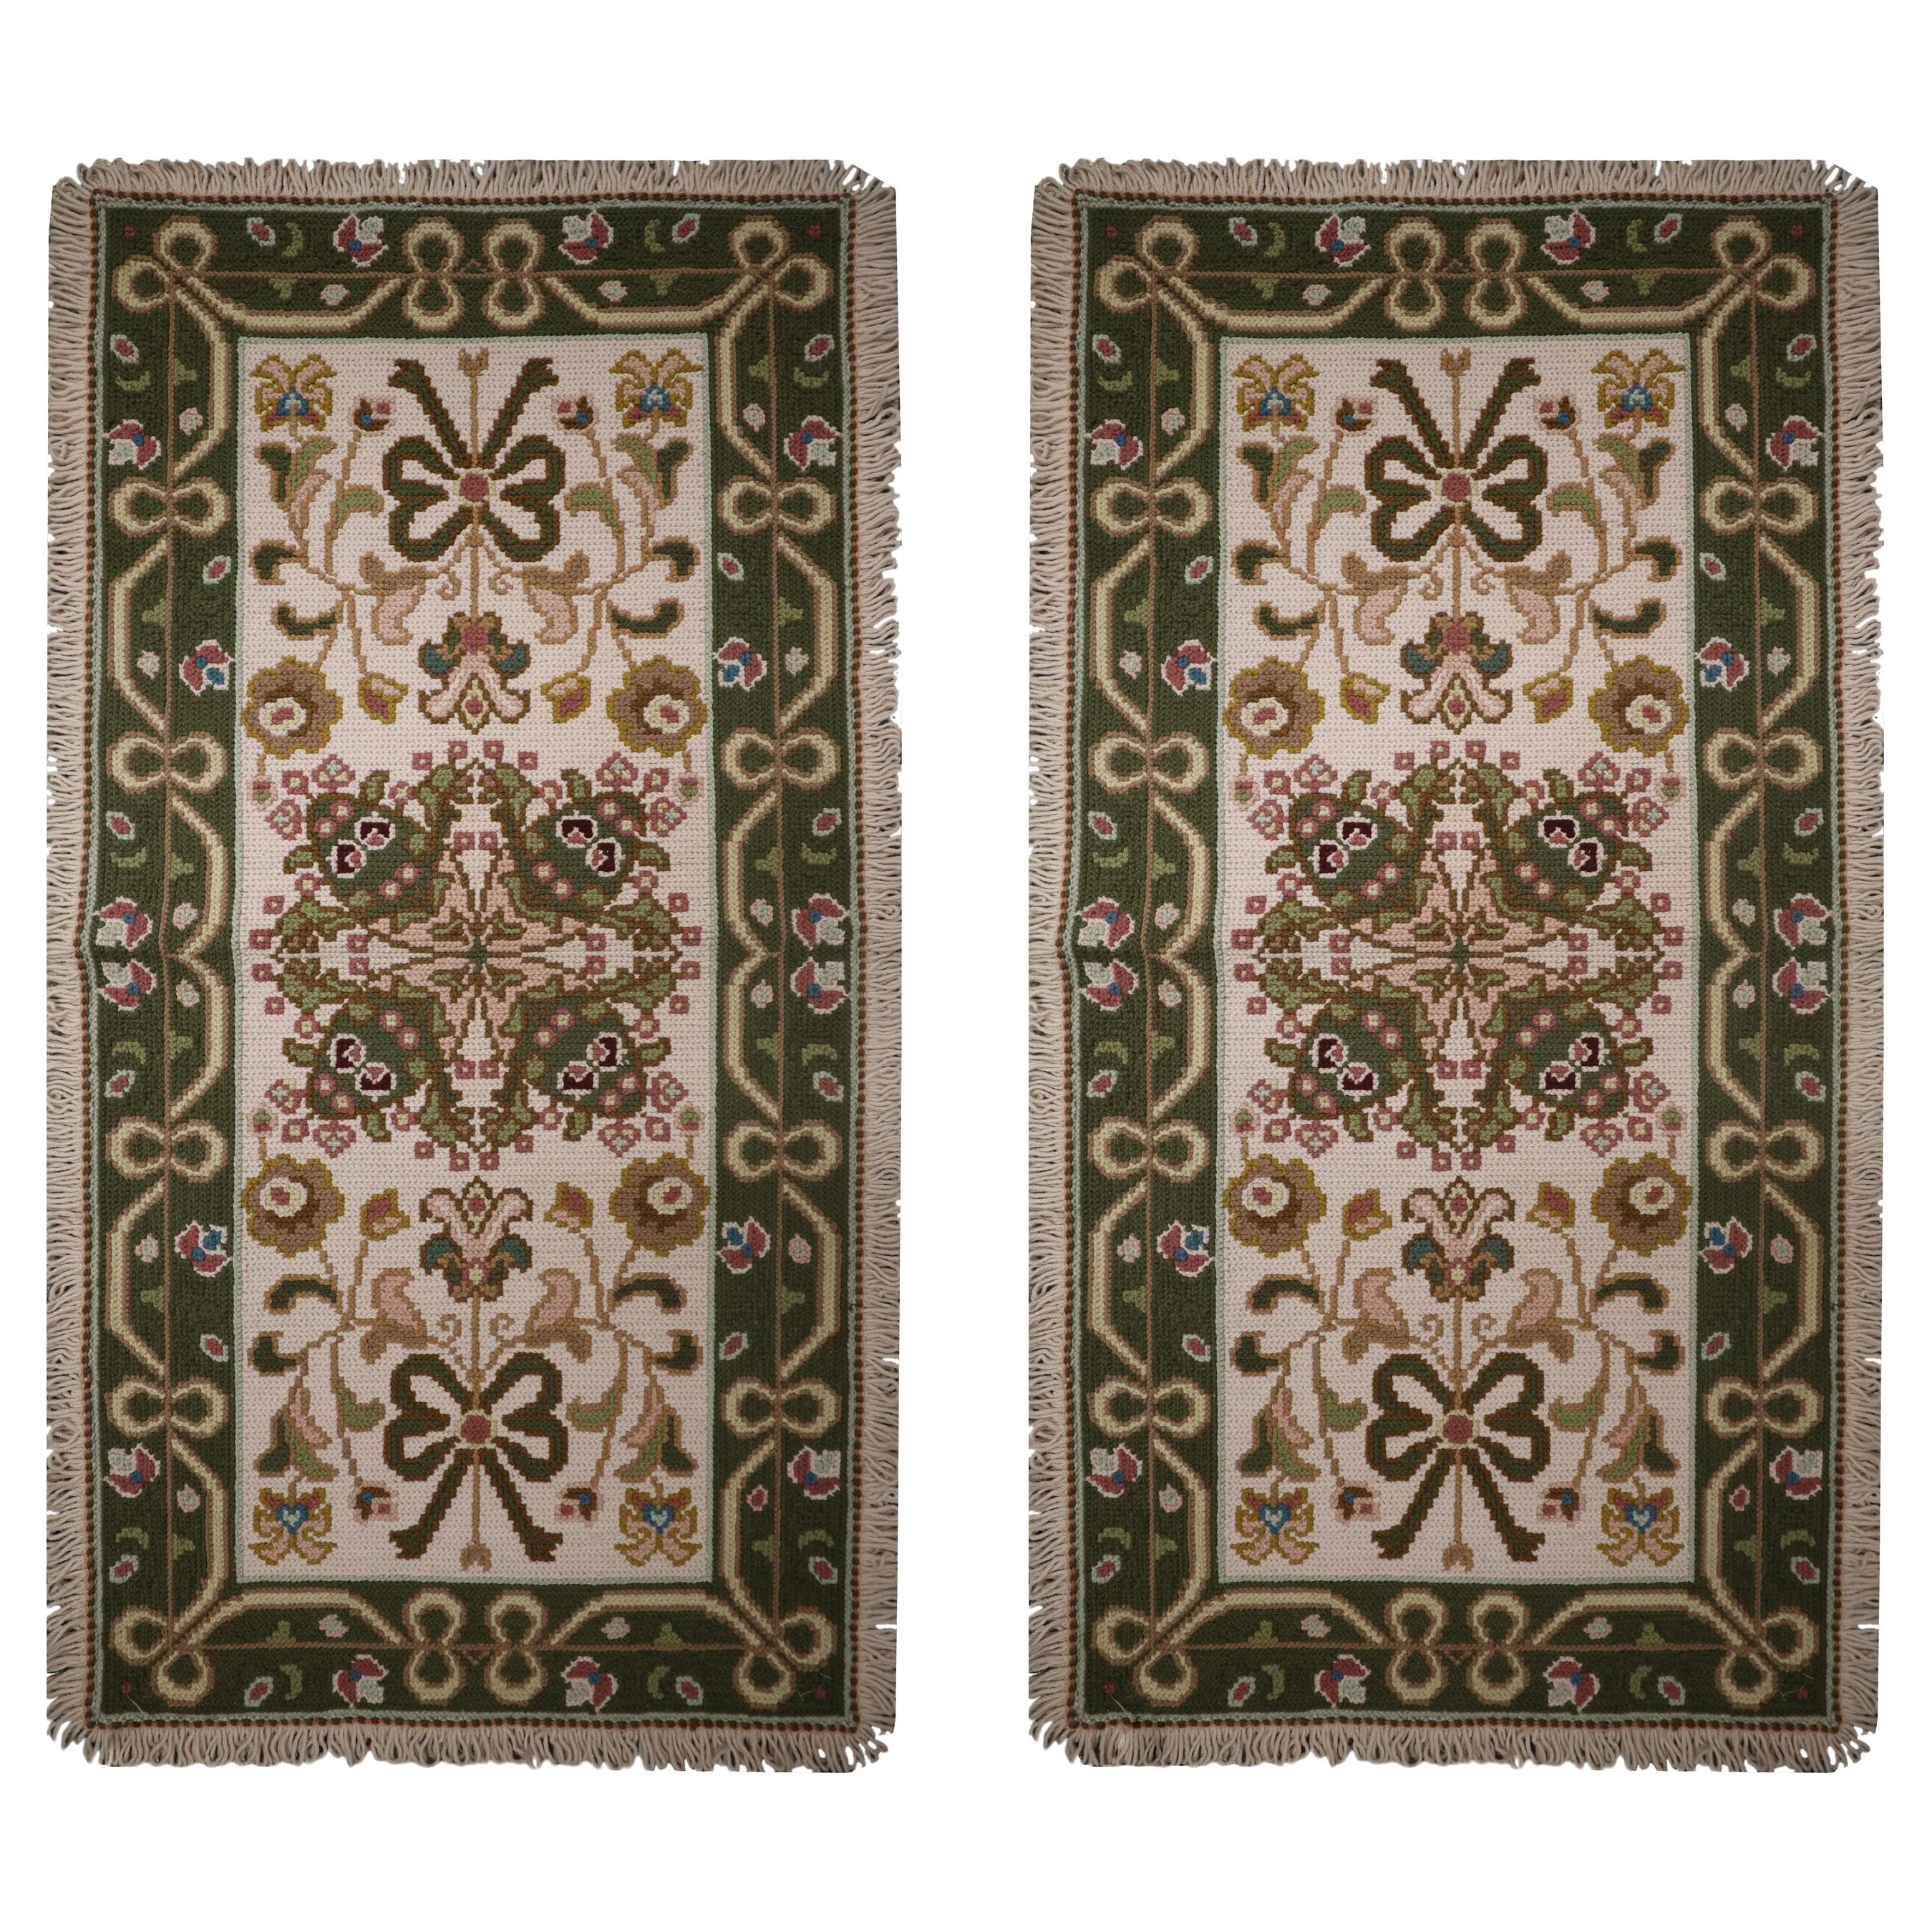 Paar handgewebte portugiesische Gobelinstickerei-Teppiche, Wolle, geblümte Teppiche 65x135cm